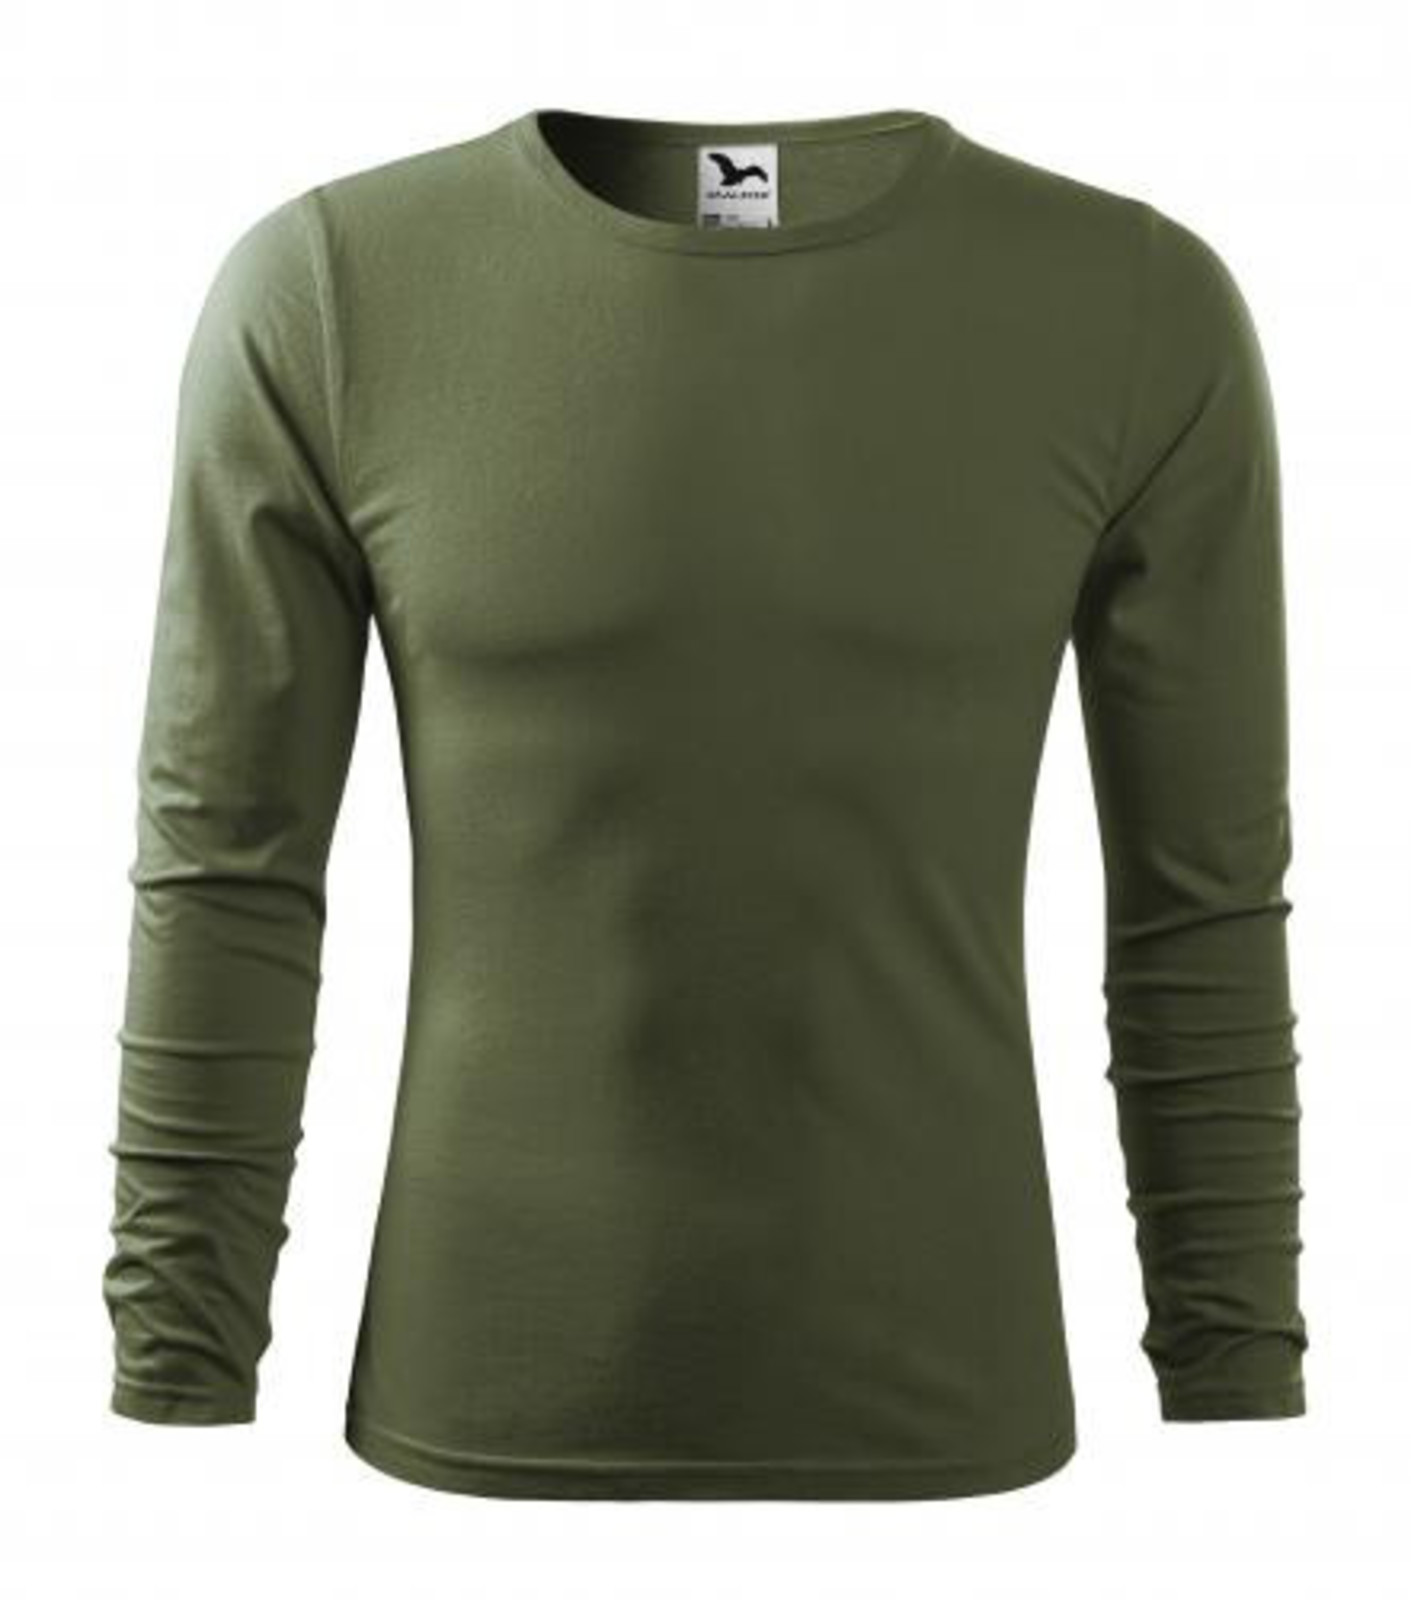 Pánske bavlnené tričko s dlhým rukávom Malfini Fit-T 119 - veľkosť: XXL, farba: khaki